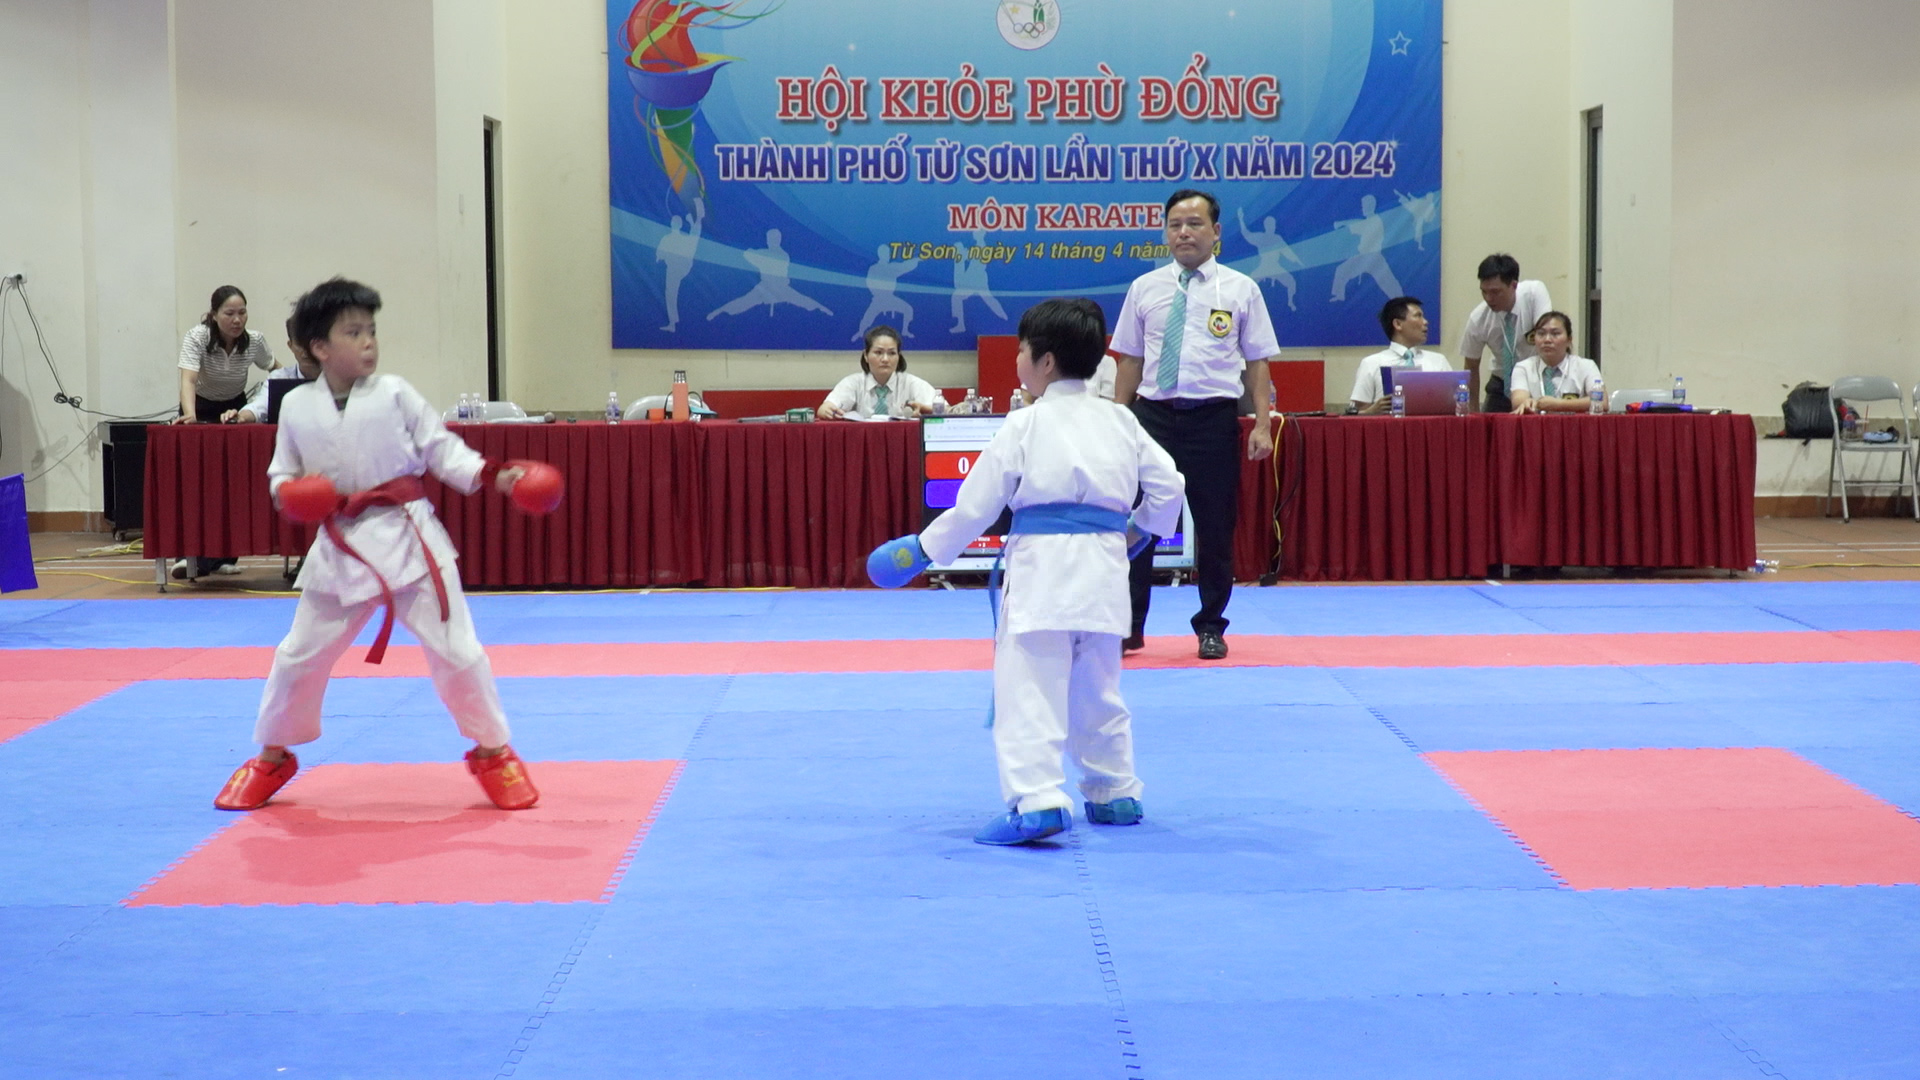 Giải Karate học sinh trong khuôn khổ HKPĐ thành phố Từ Sơn